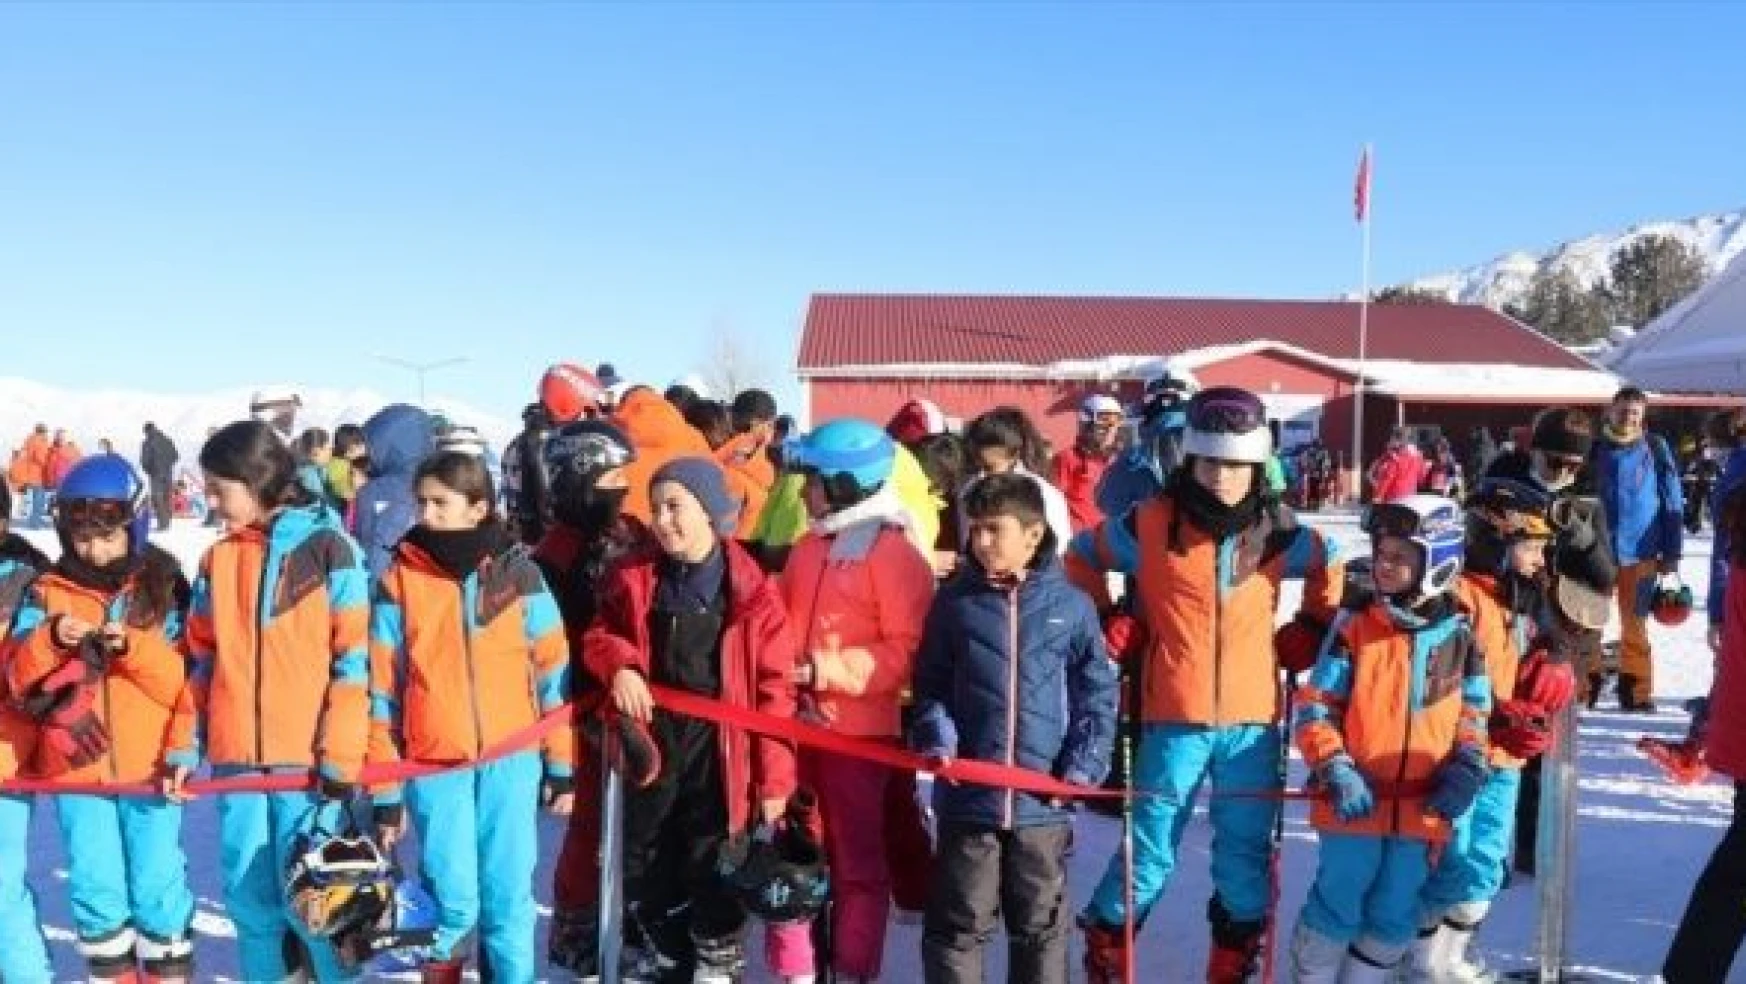 Alp disiplini eleme yarışları Erzincan'da tamamlandı